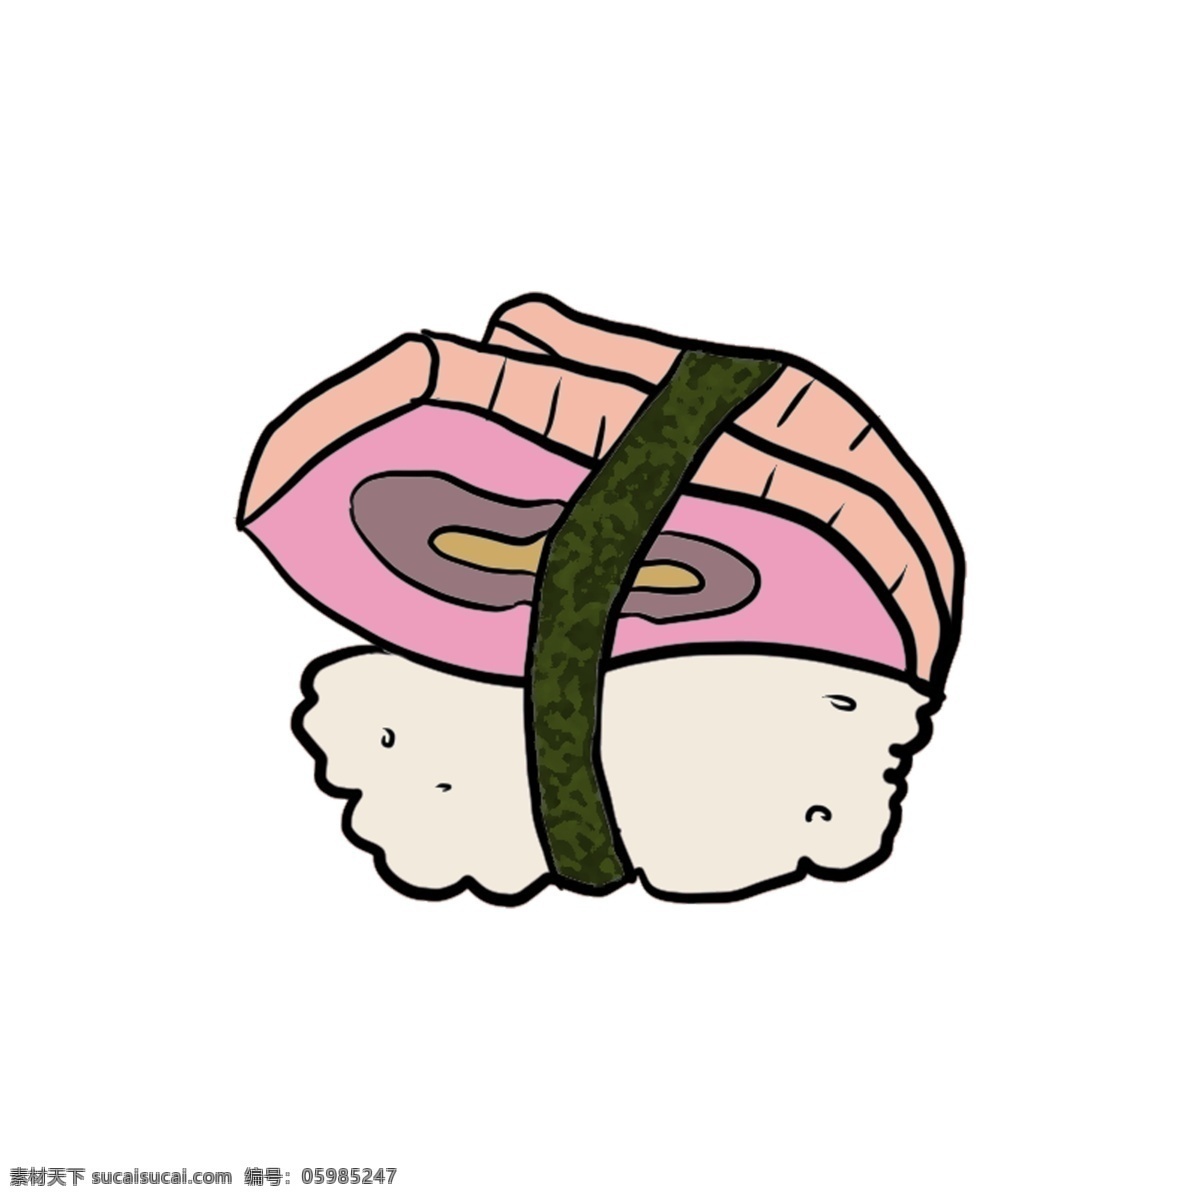 日式 料理 寿司 美食 三文鱼寿司 日本 食物 投送 芝麻 绿色 日式料理 寿司美食 日本寿司 小吃